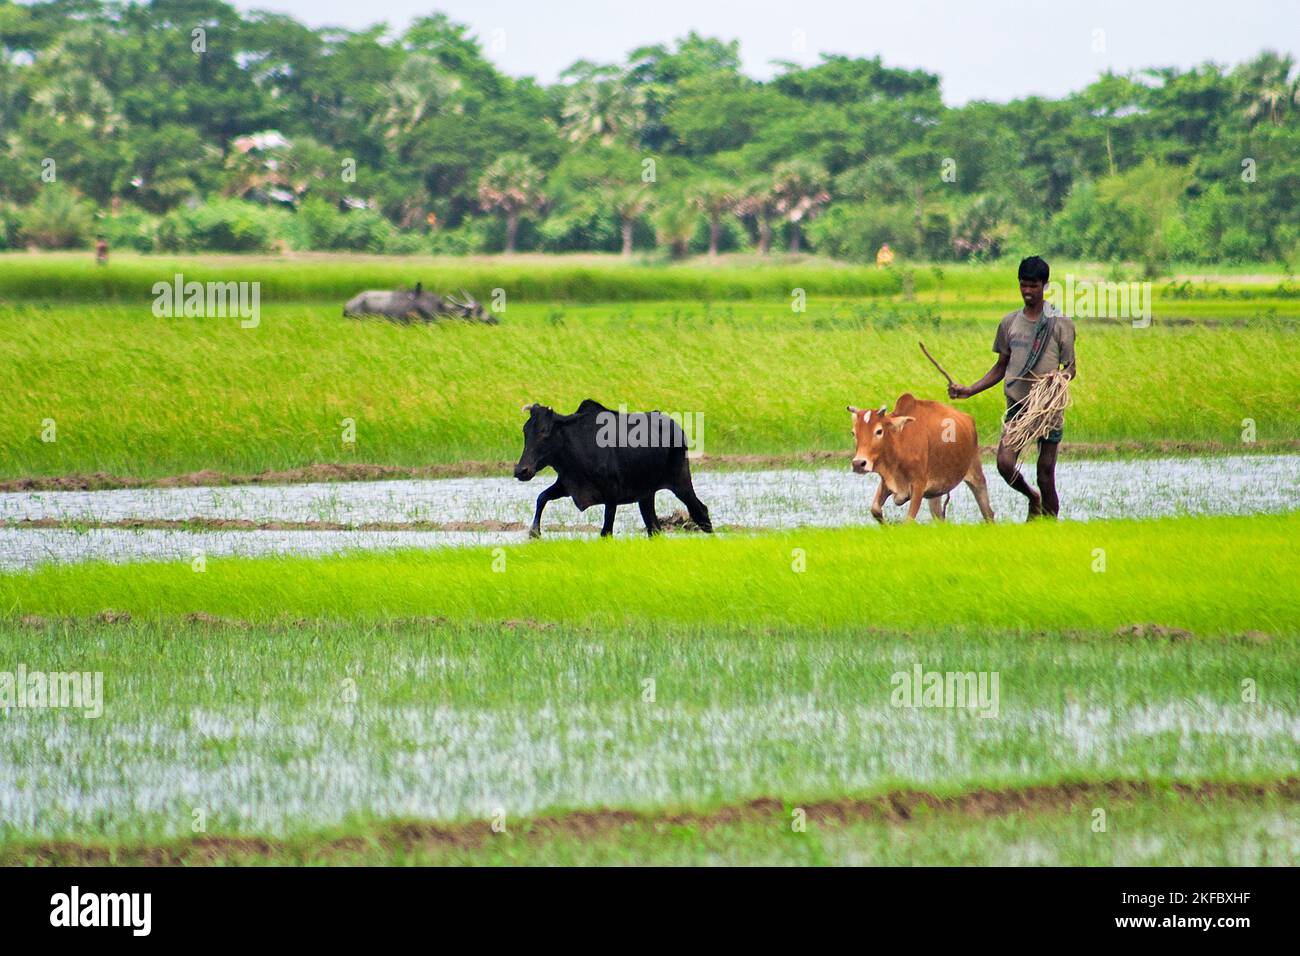 Un agriculteur rural travaillant ses vaches dans un champ de paddy. Khulna, Bangladesh. Banque D'Images